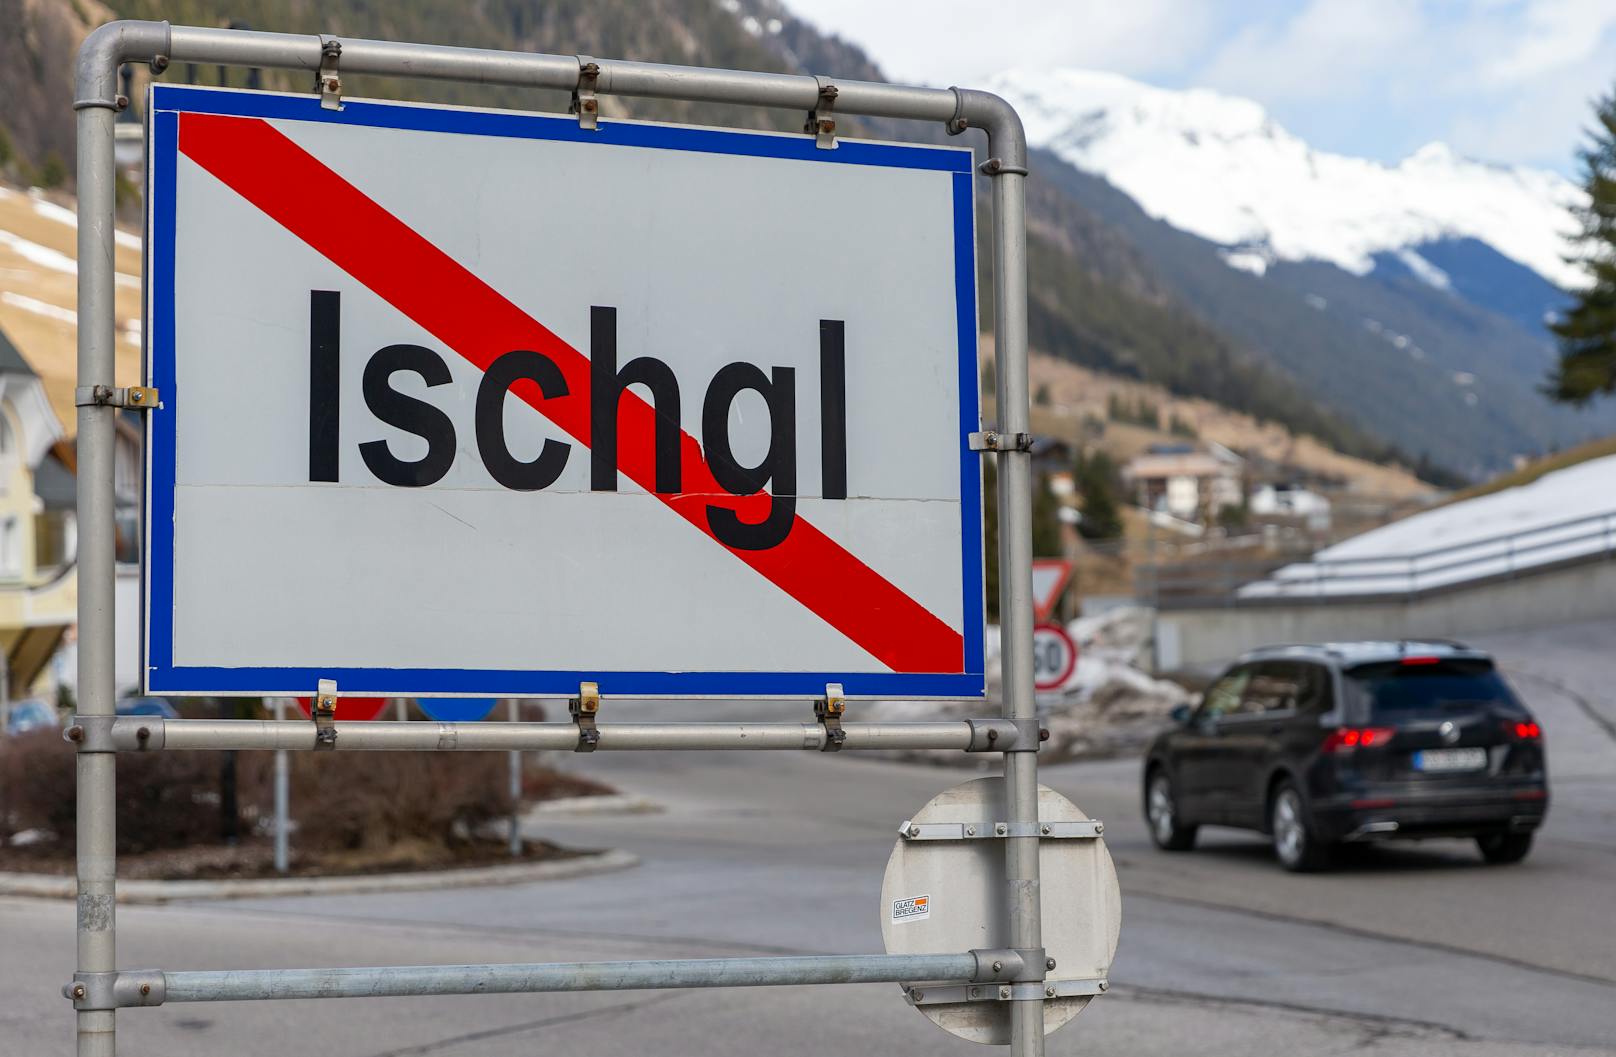 Der Wintersportort Ischgl in Tirol gilt als Hotspot, der maßgeblich zur Verbreitung des Coronavirus in Teilen Europas beigetragen haben soll.